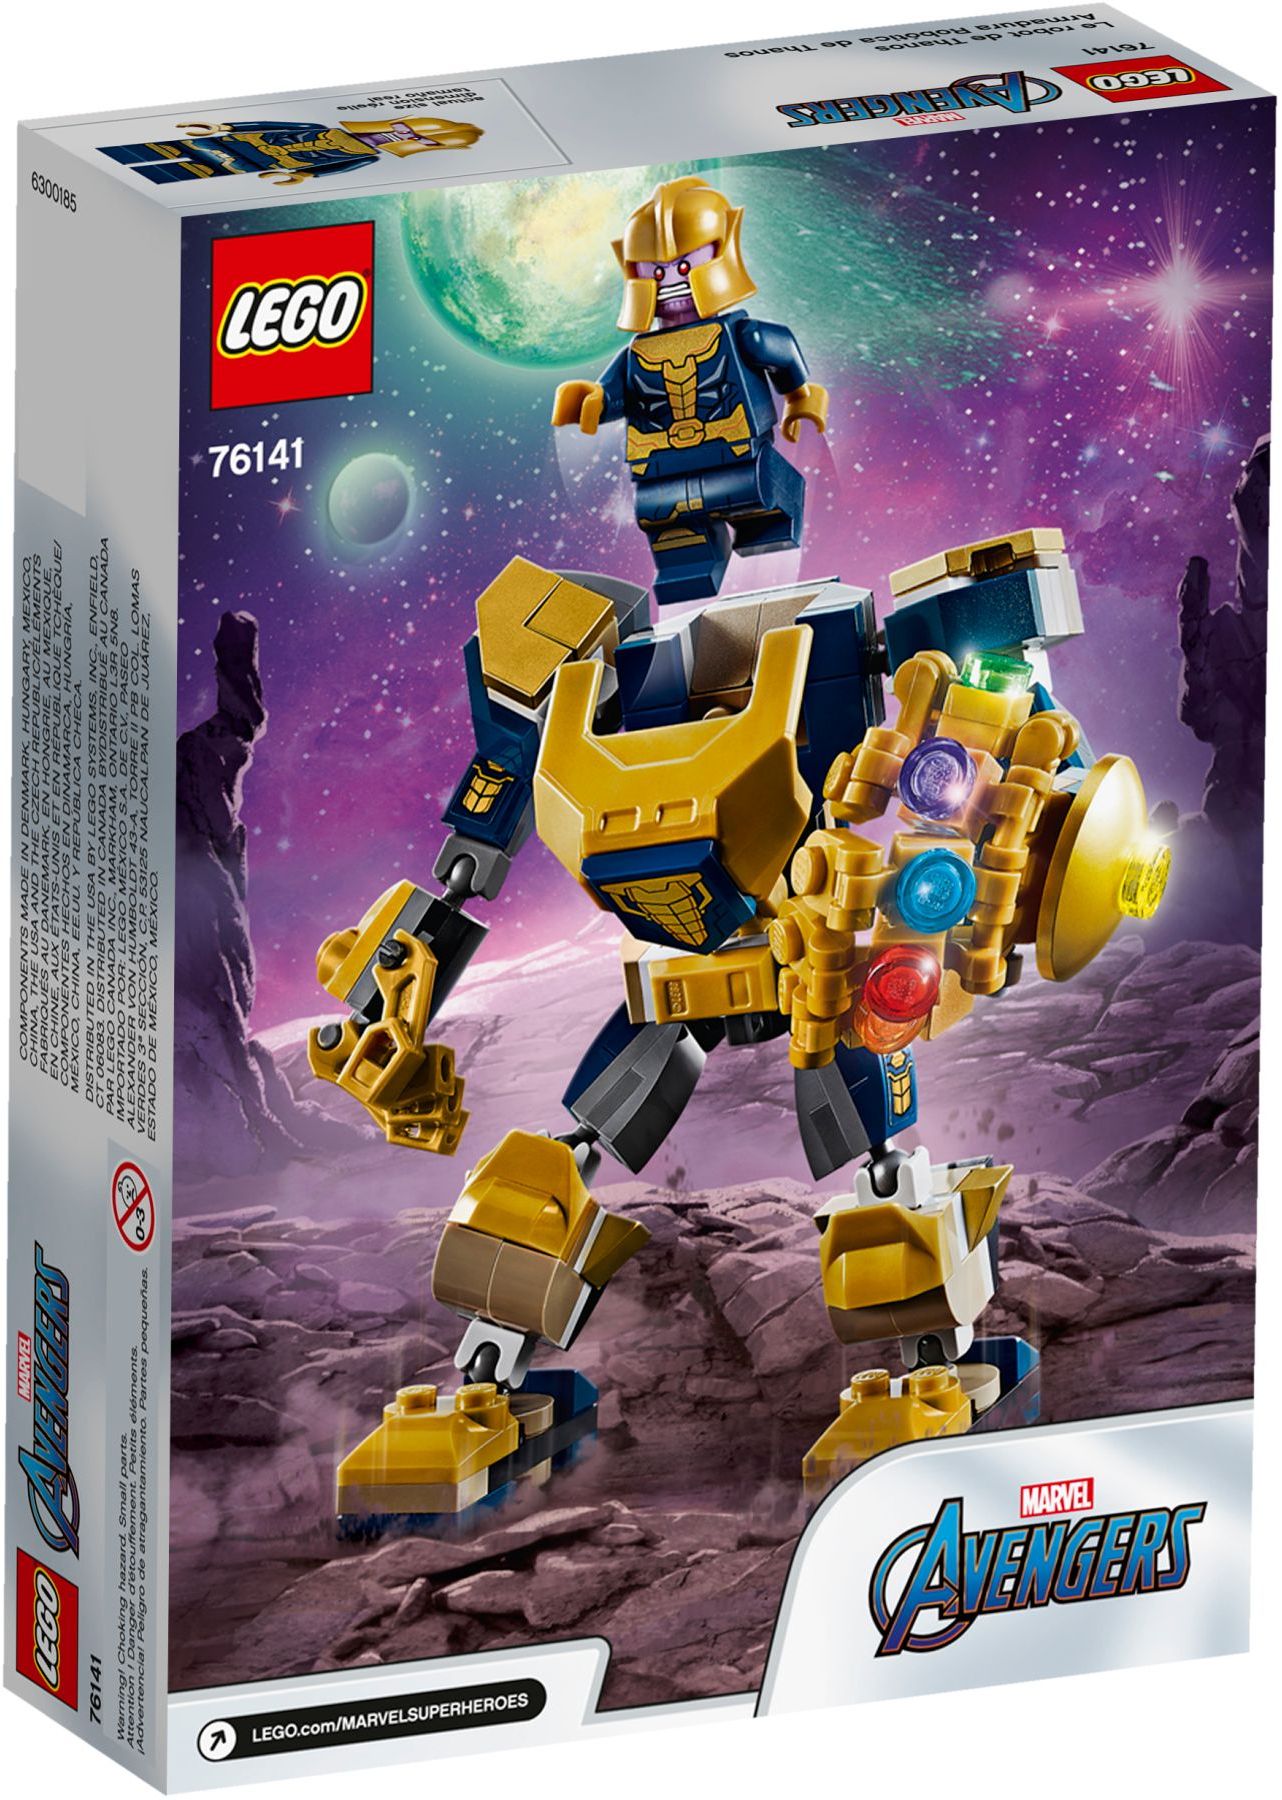 Brickfinder - LEGO Marvel Super Heroes 2020 1HY Hi-Res Images!